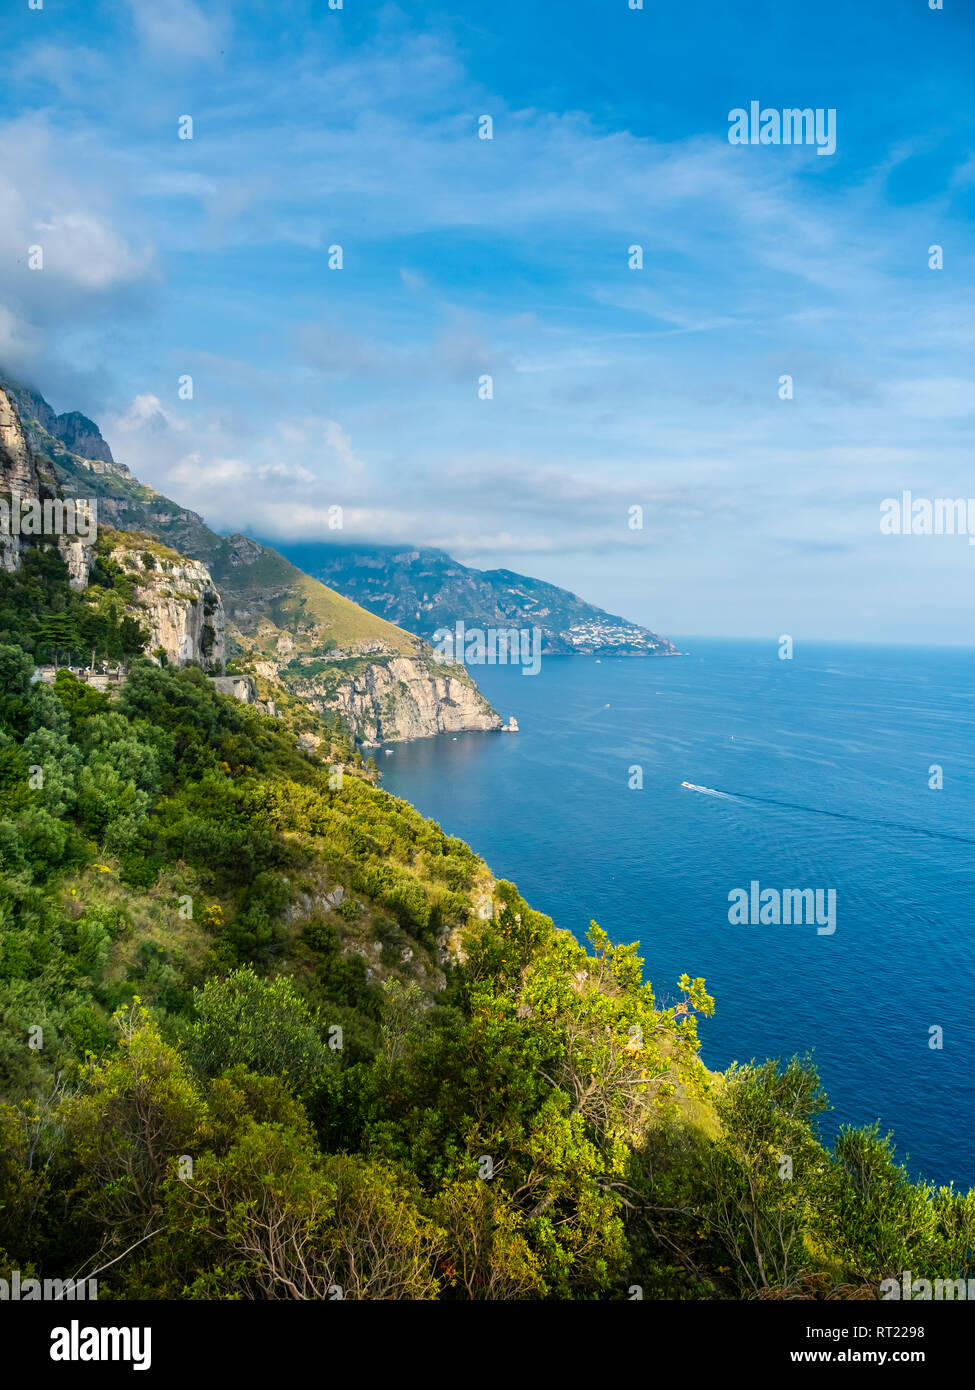 L'Italia, la Campania, il Golfo di Salerno, Sorrent, Costiera Amalfitana, Positano, cliff coast Foto Stock